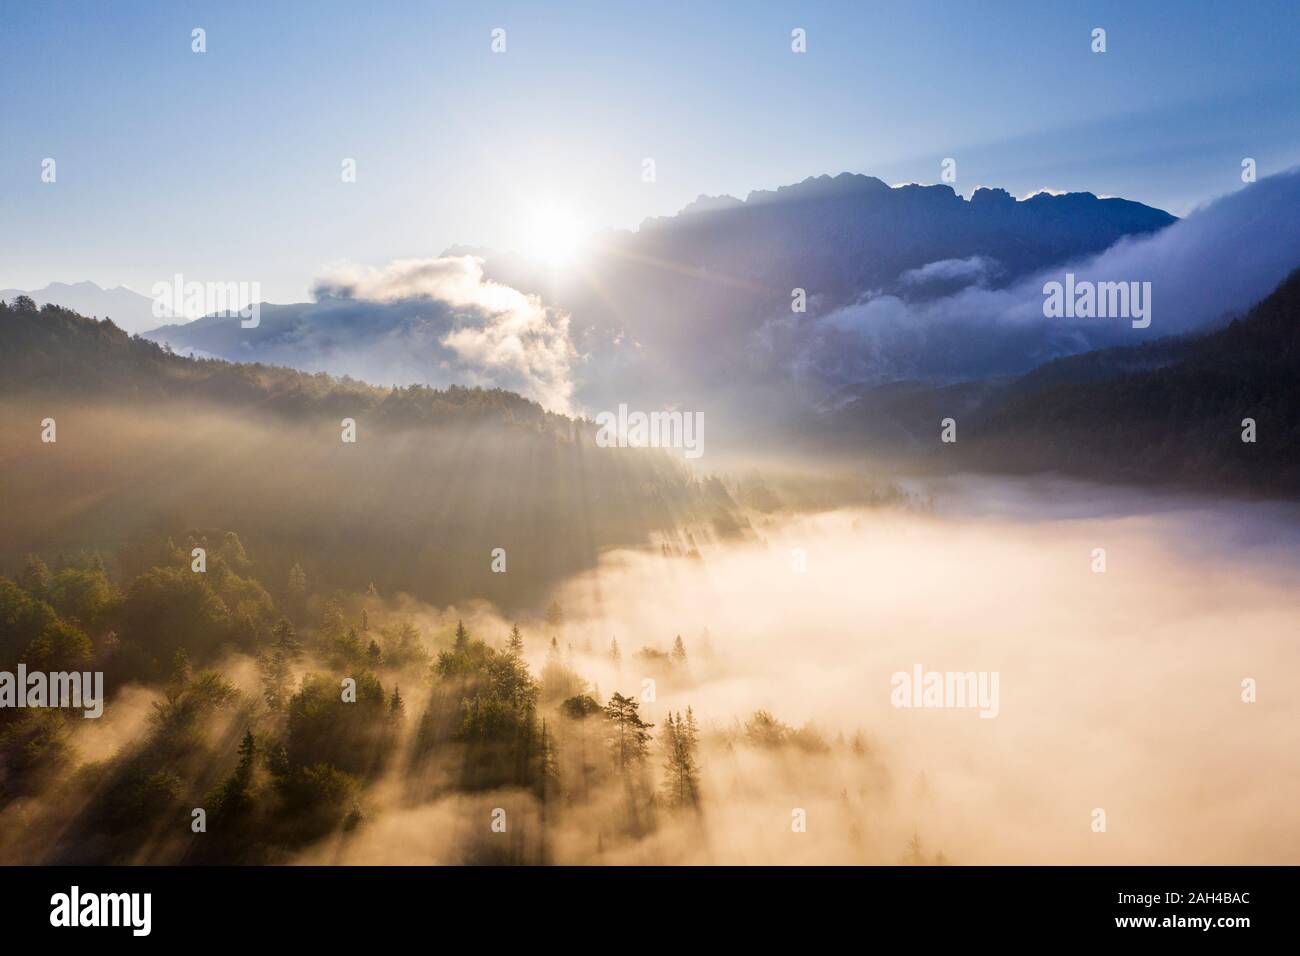 Germany, Bavaria, Mittenwald, soleil levant illumine le brouillard enveloppant Ferchensee lac et forêt environnante Banque D'Images